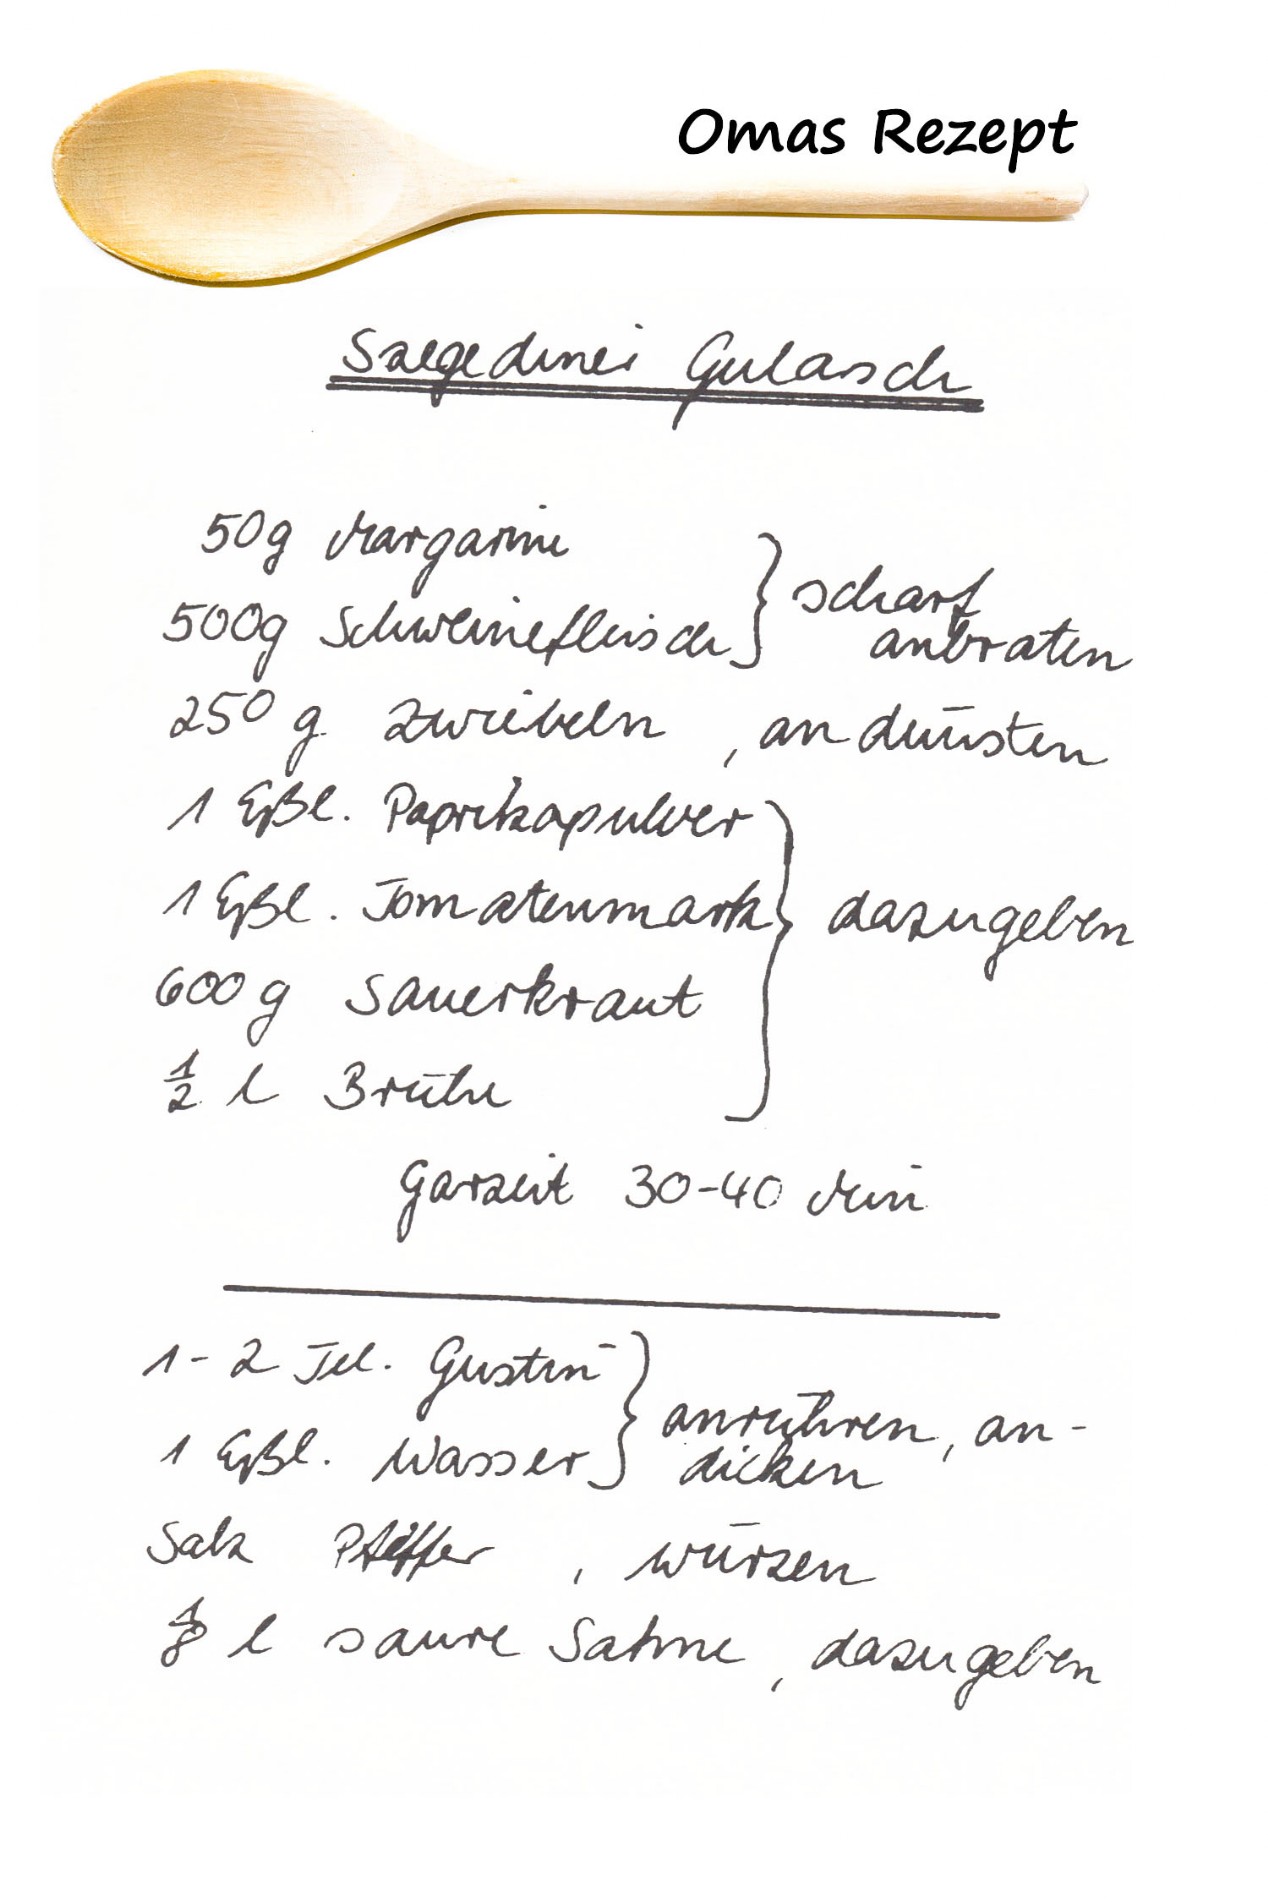 Szegediner Gulasch aus Omas Kochbuch Rezepte